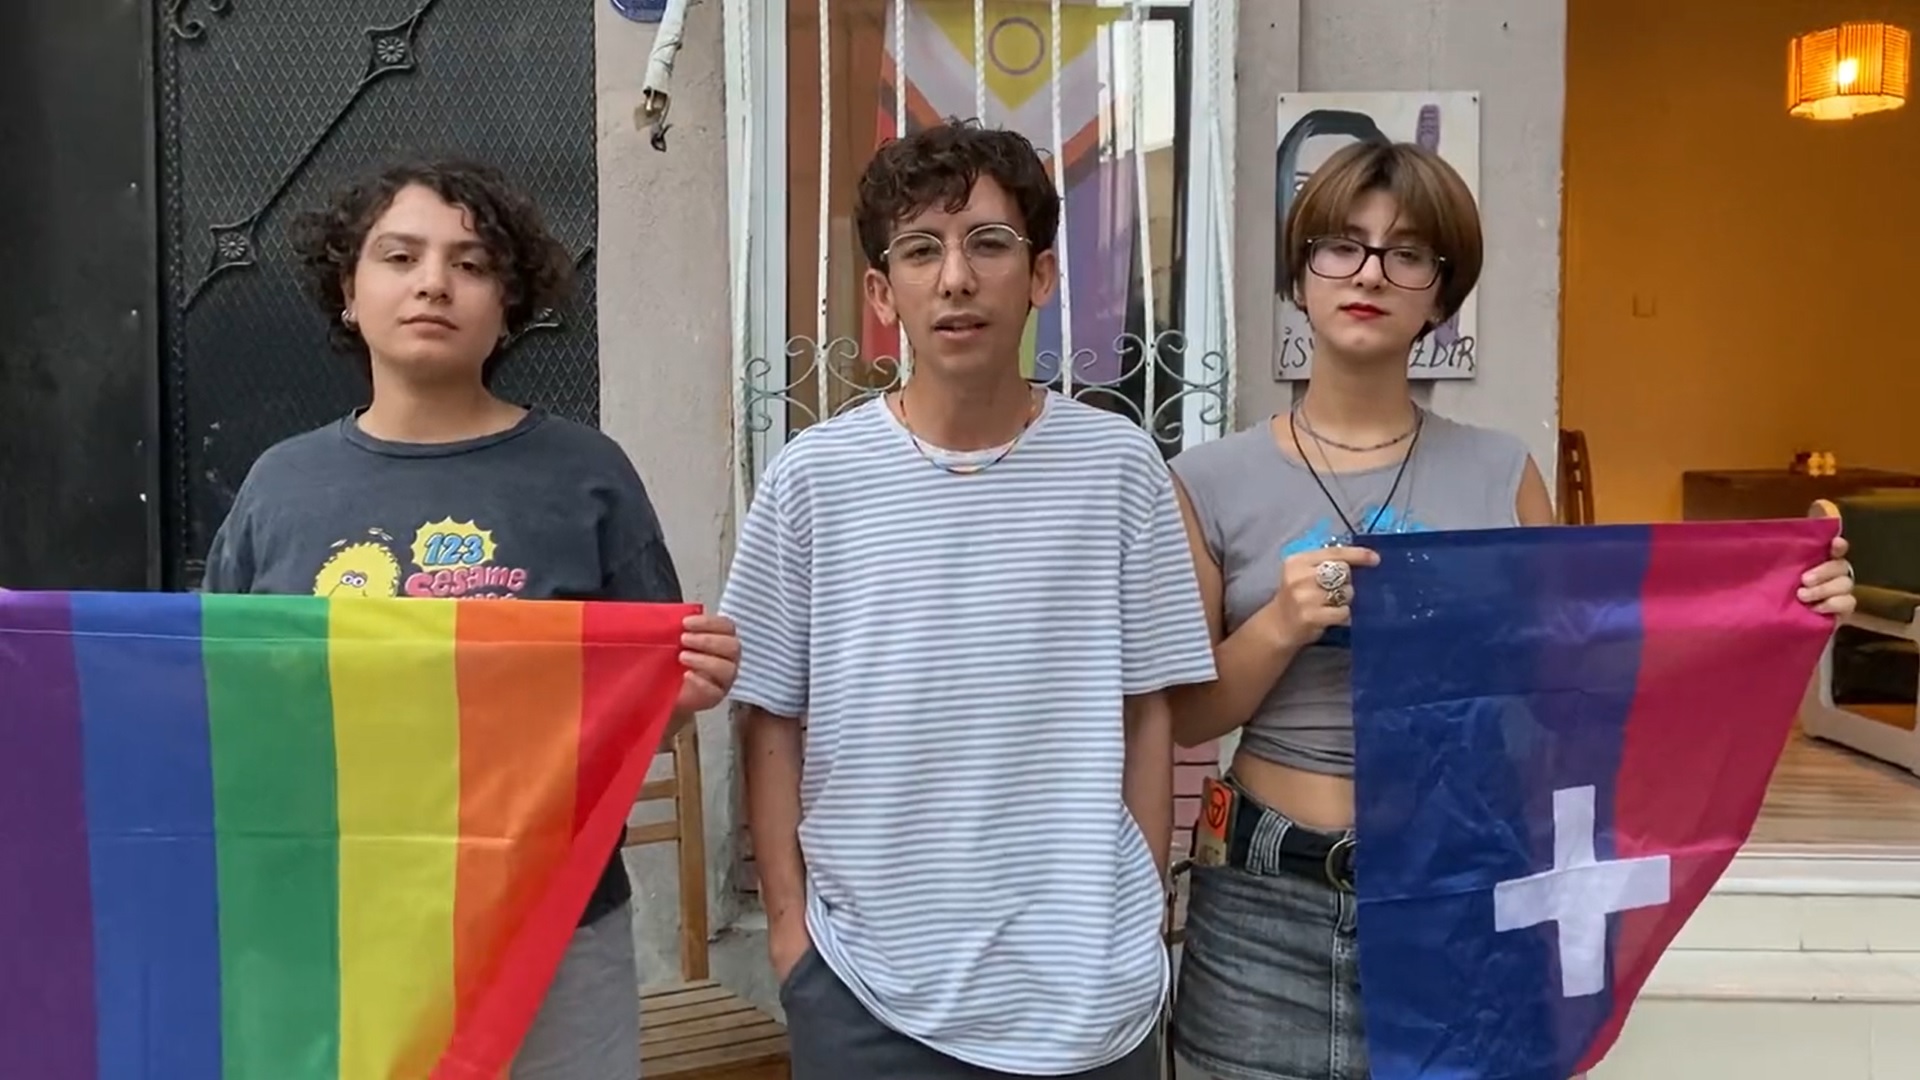 İzmir LGBTİ+ Onur Haftası’ndan Eskişehir ve Adana’ya dayanışma mesajı | Kaos GL - LGBTİ+ Haber Portalı Haber